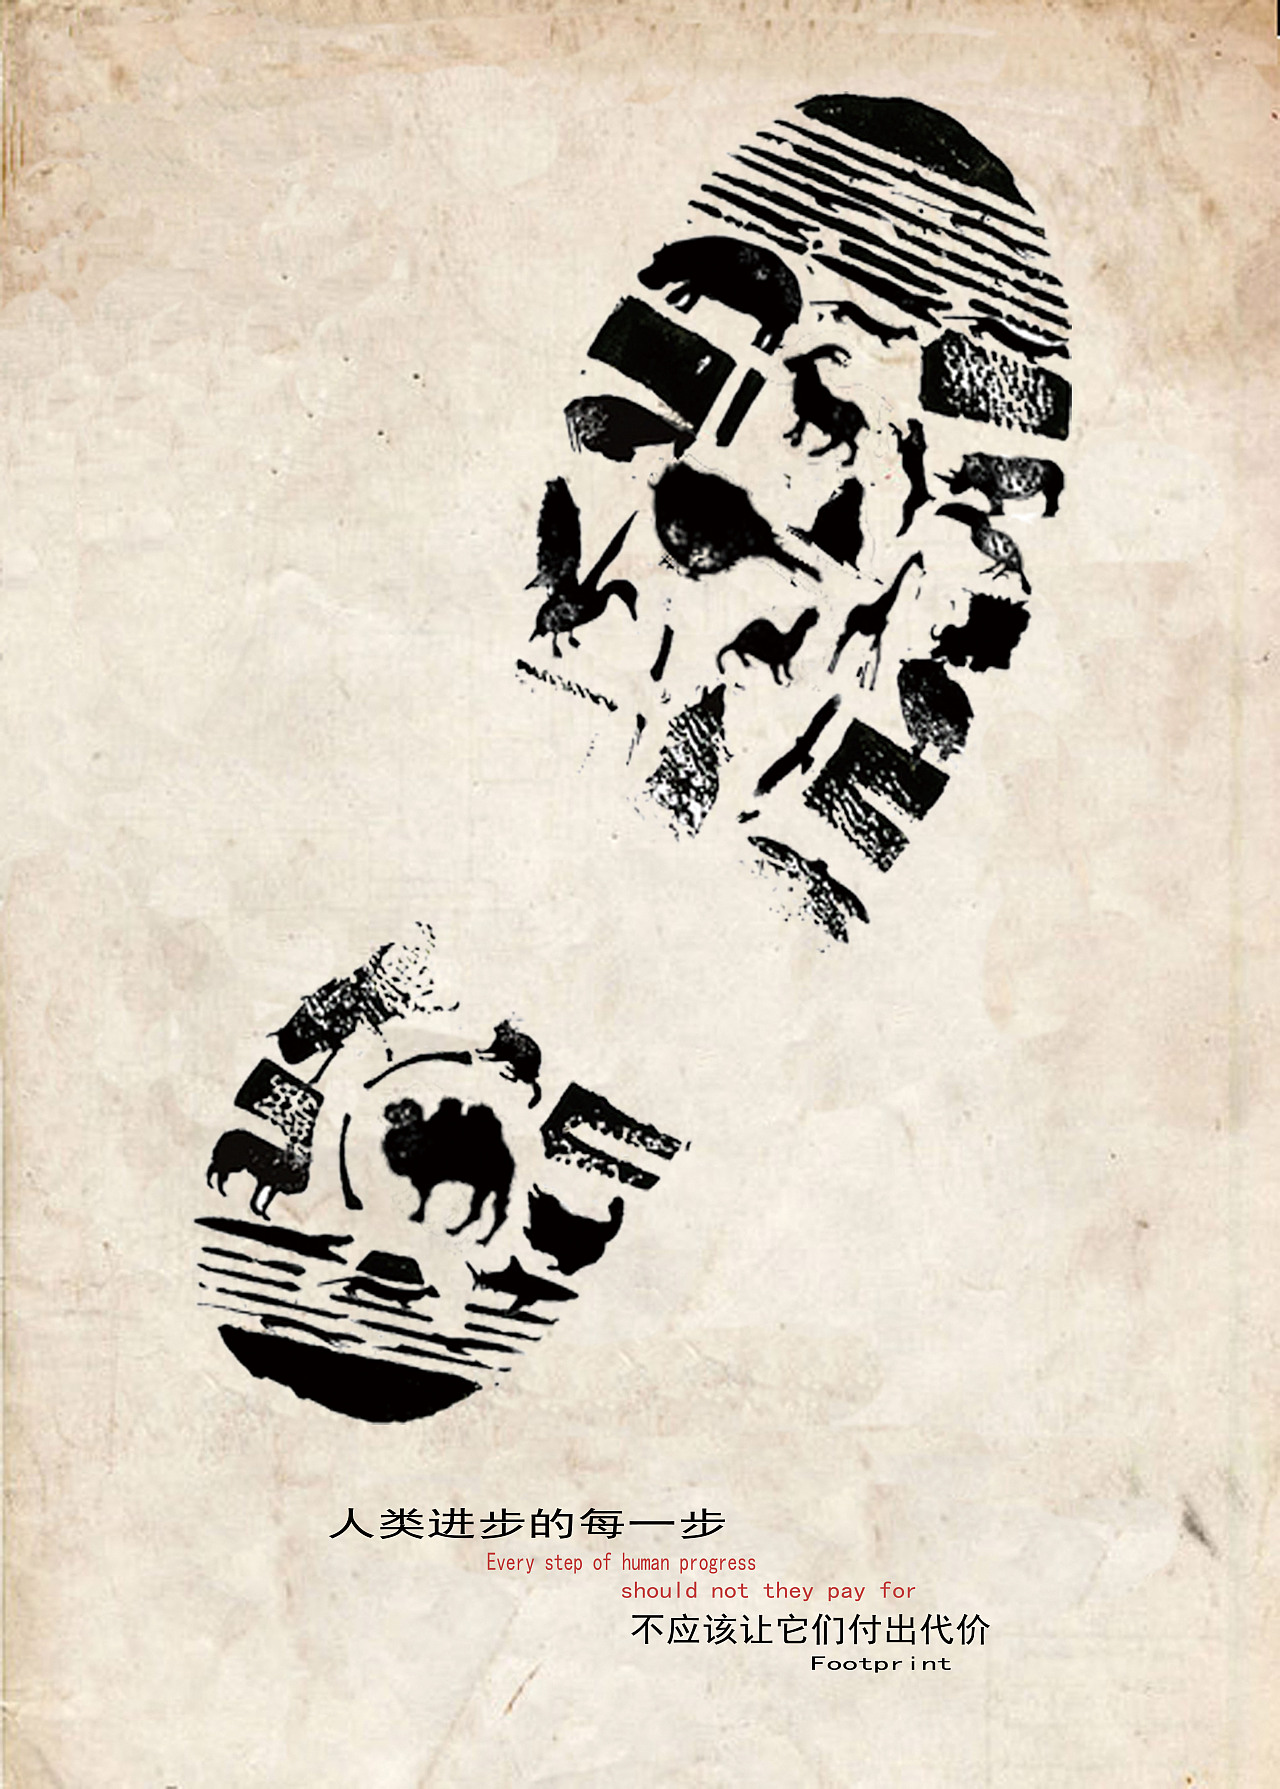 中国白金创意海报设计《足迹》